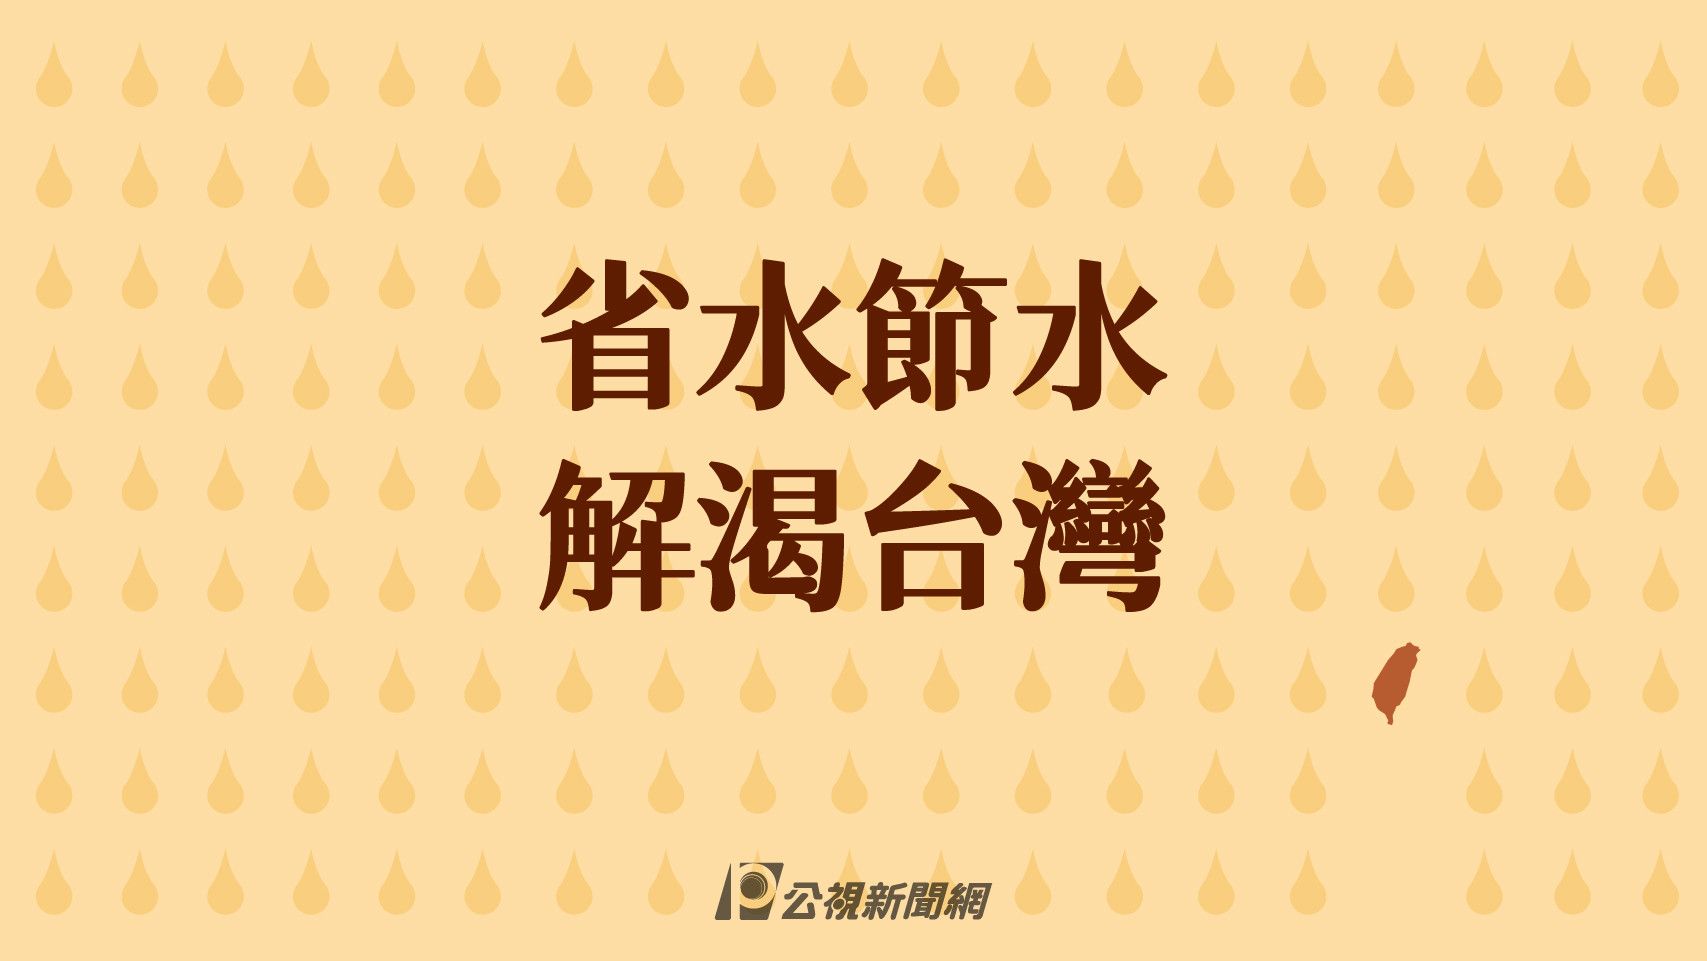 解渴台灣》少雨、用水量大 台灣快曬成番薯乾